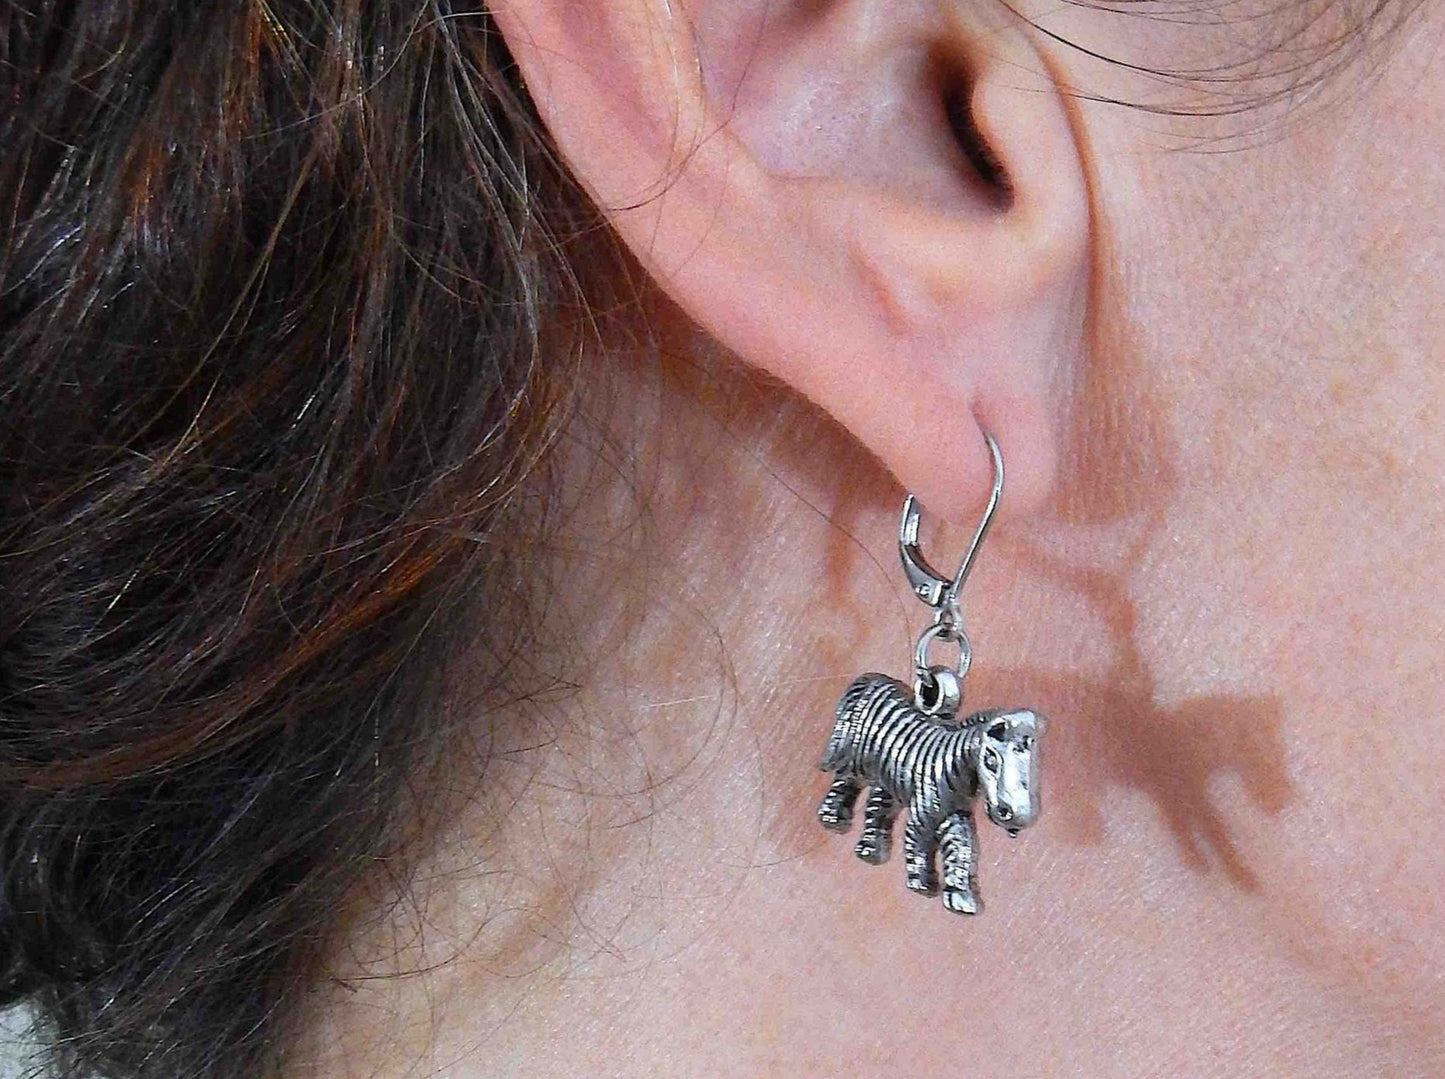 Short earrings with pewter zebras, stainless steel lever back hooks